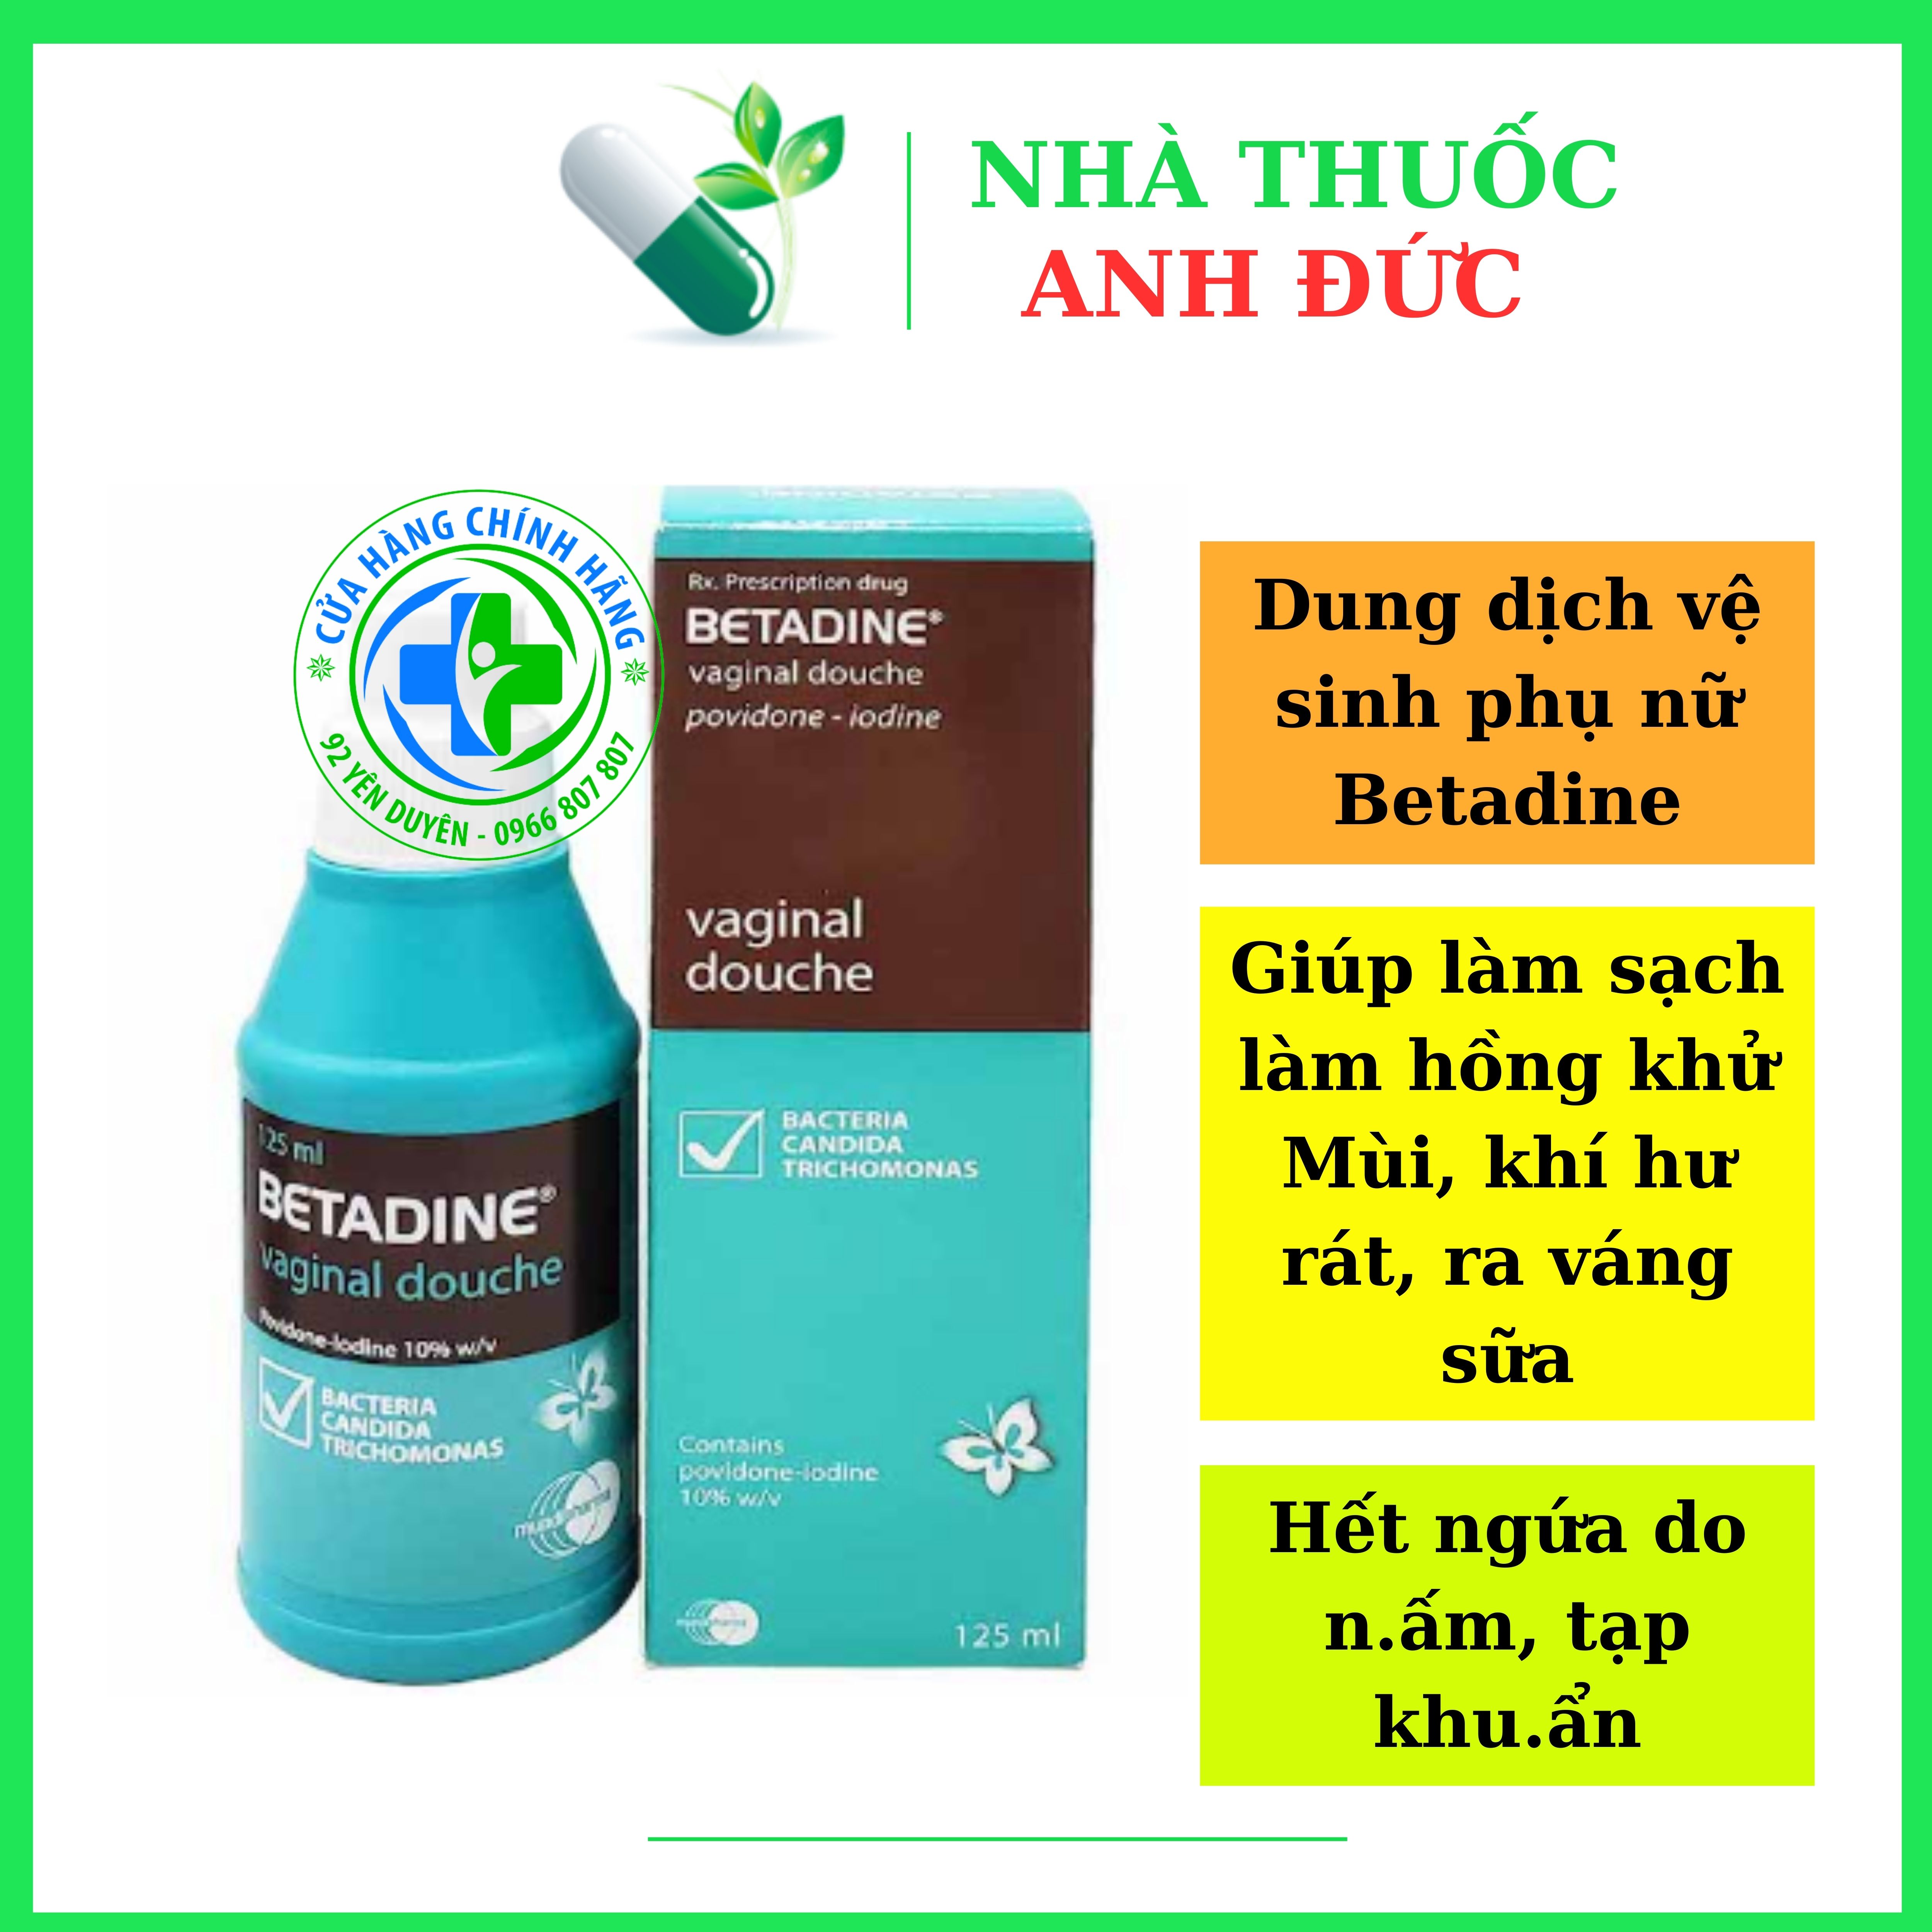 Betadine Dung dịch vệ sinh sát trùng vùng kín, phòng viêm, nấm ngứa, khí hư